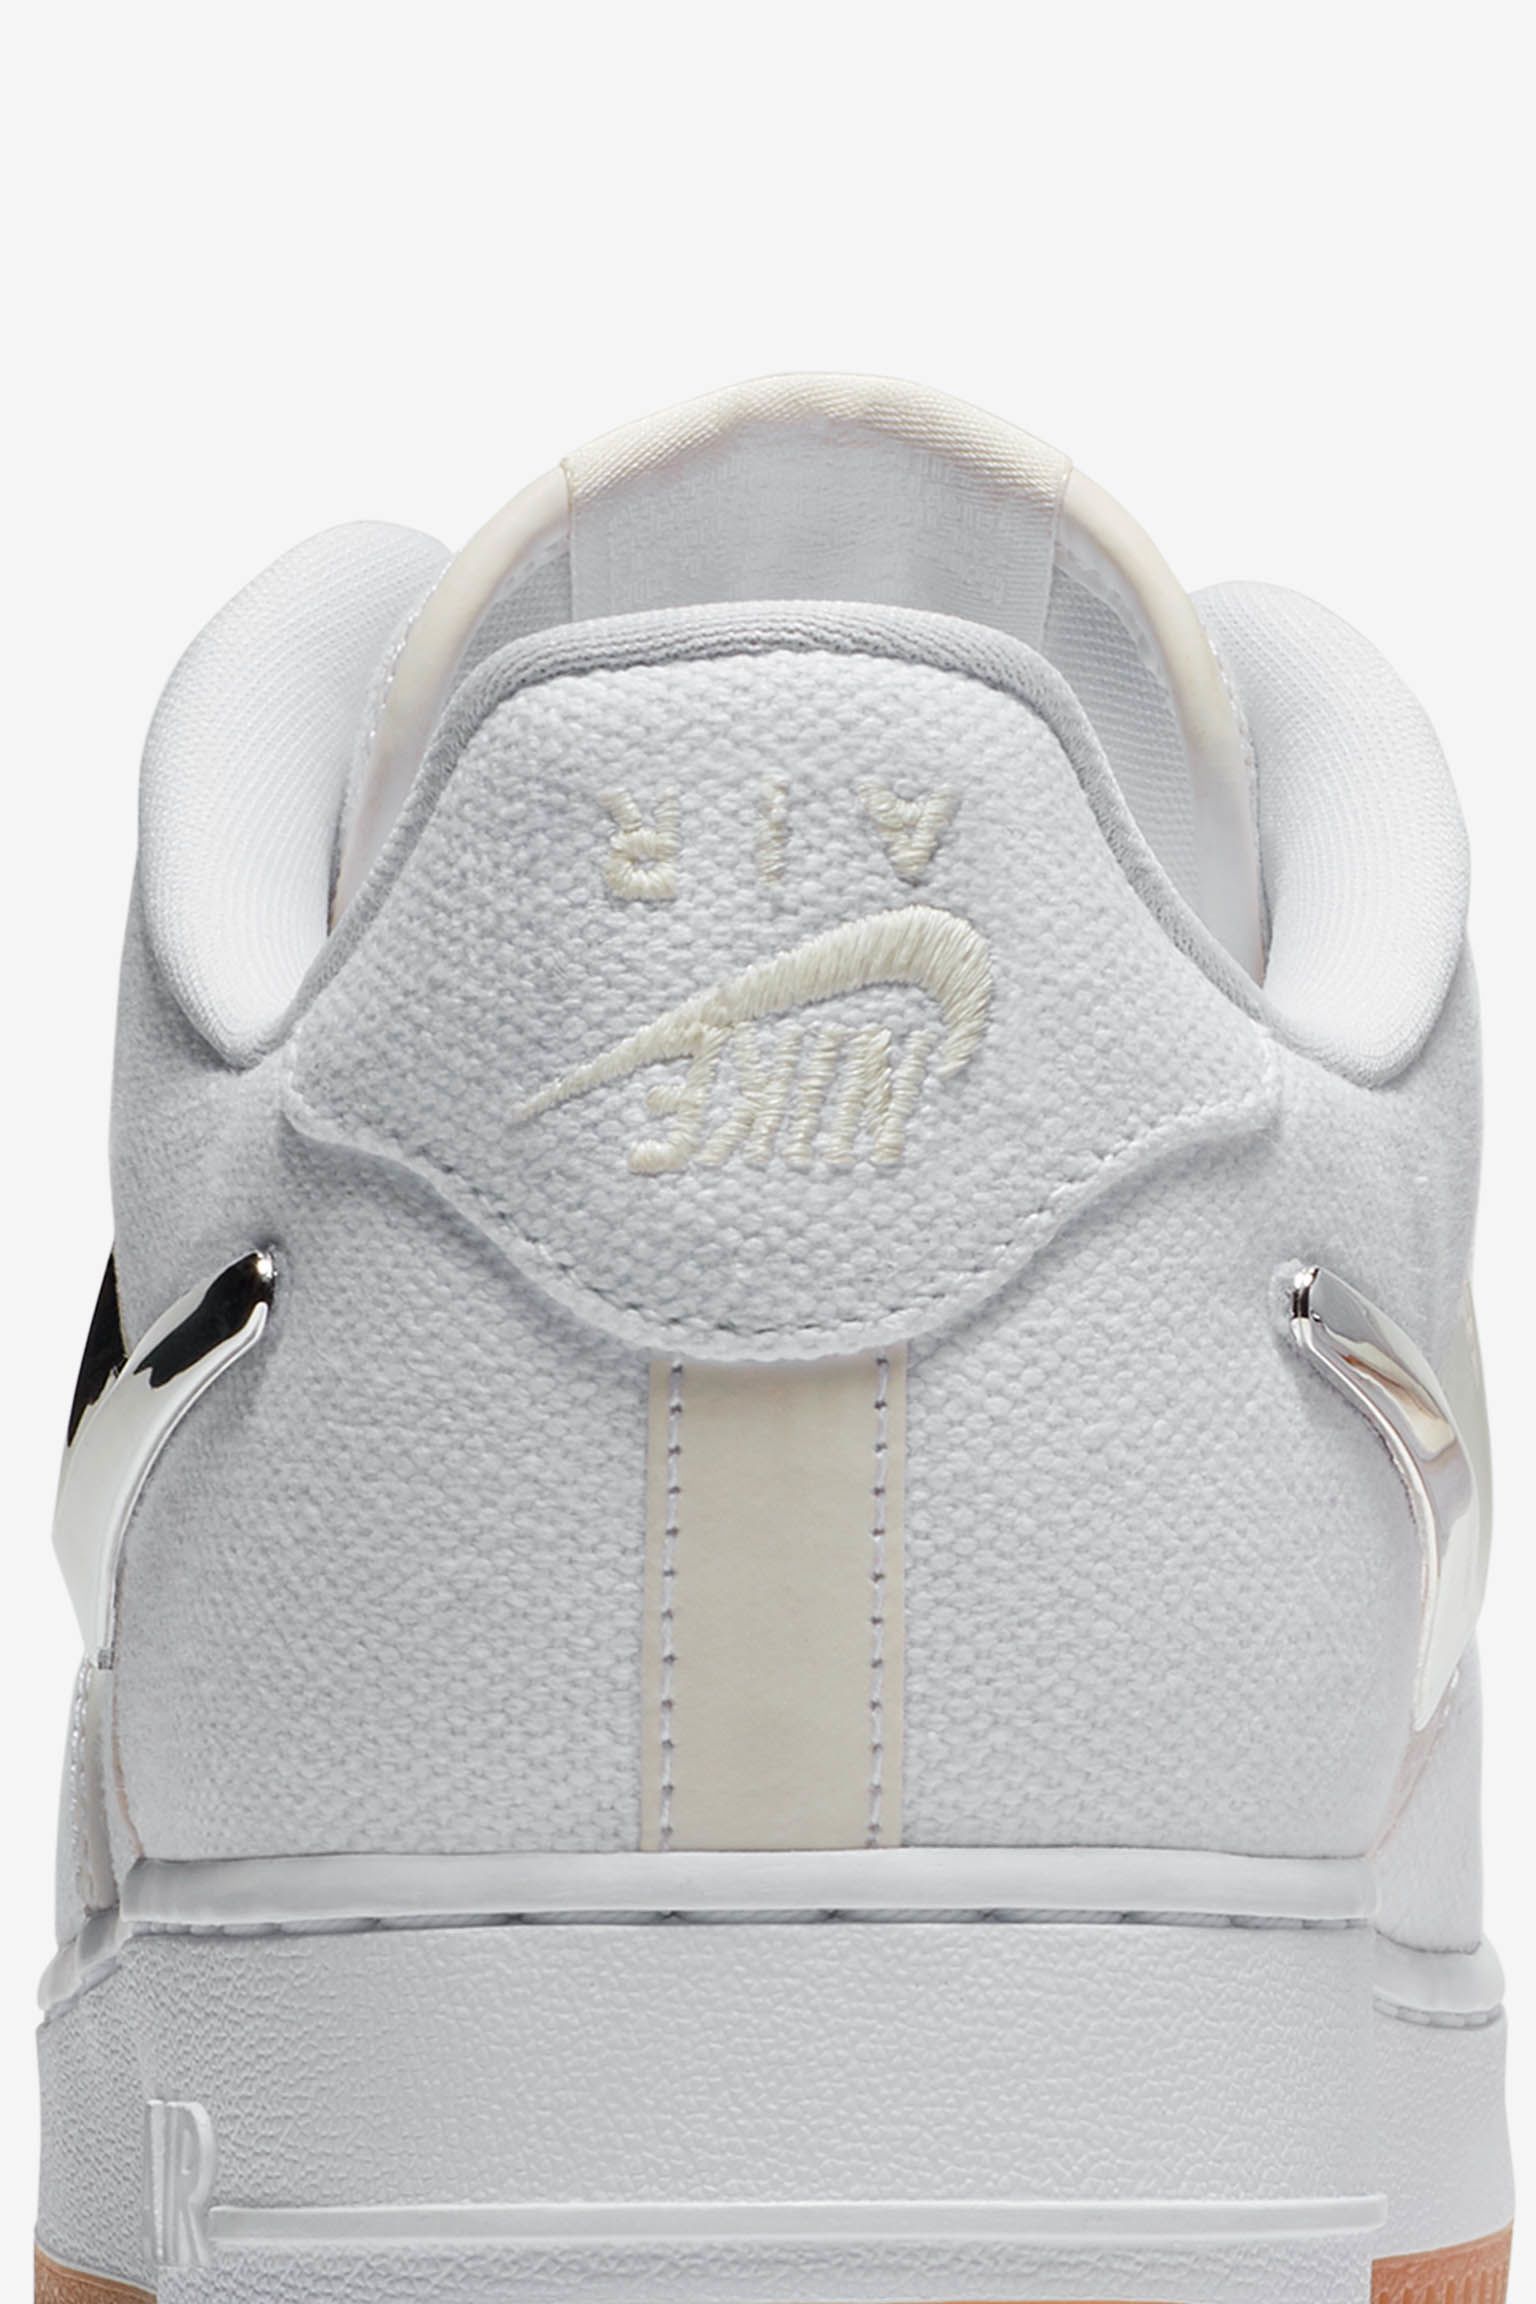 NIKE公式】ナイキ エア フォース 1 'Travis Scott' 発売日. Nike SNKRS JP